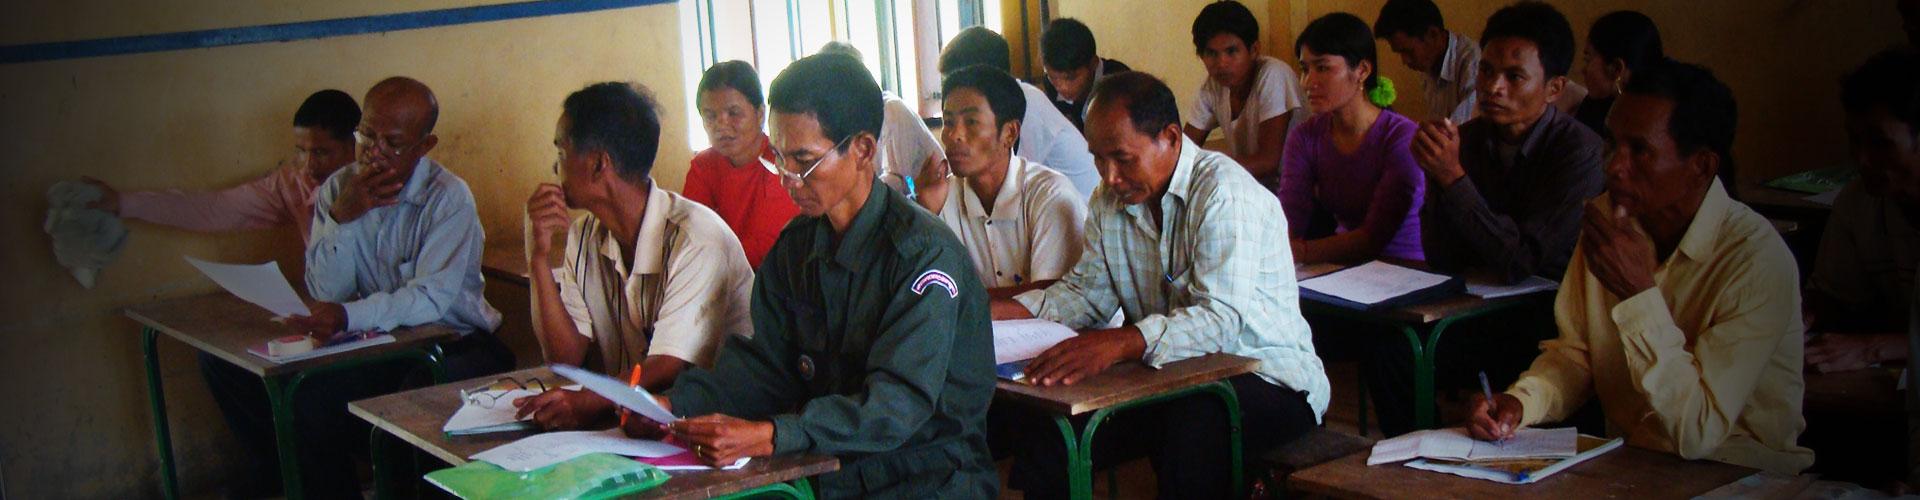 NGO Support Volunteer Program in Cambodia